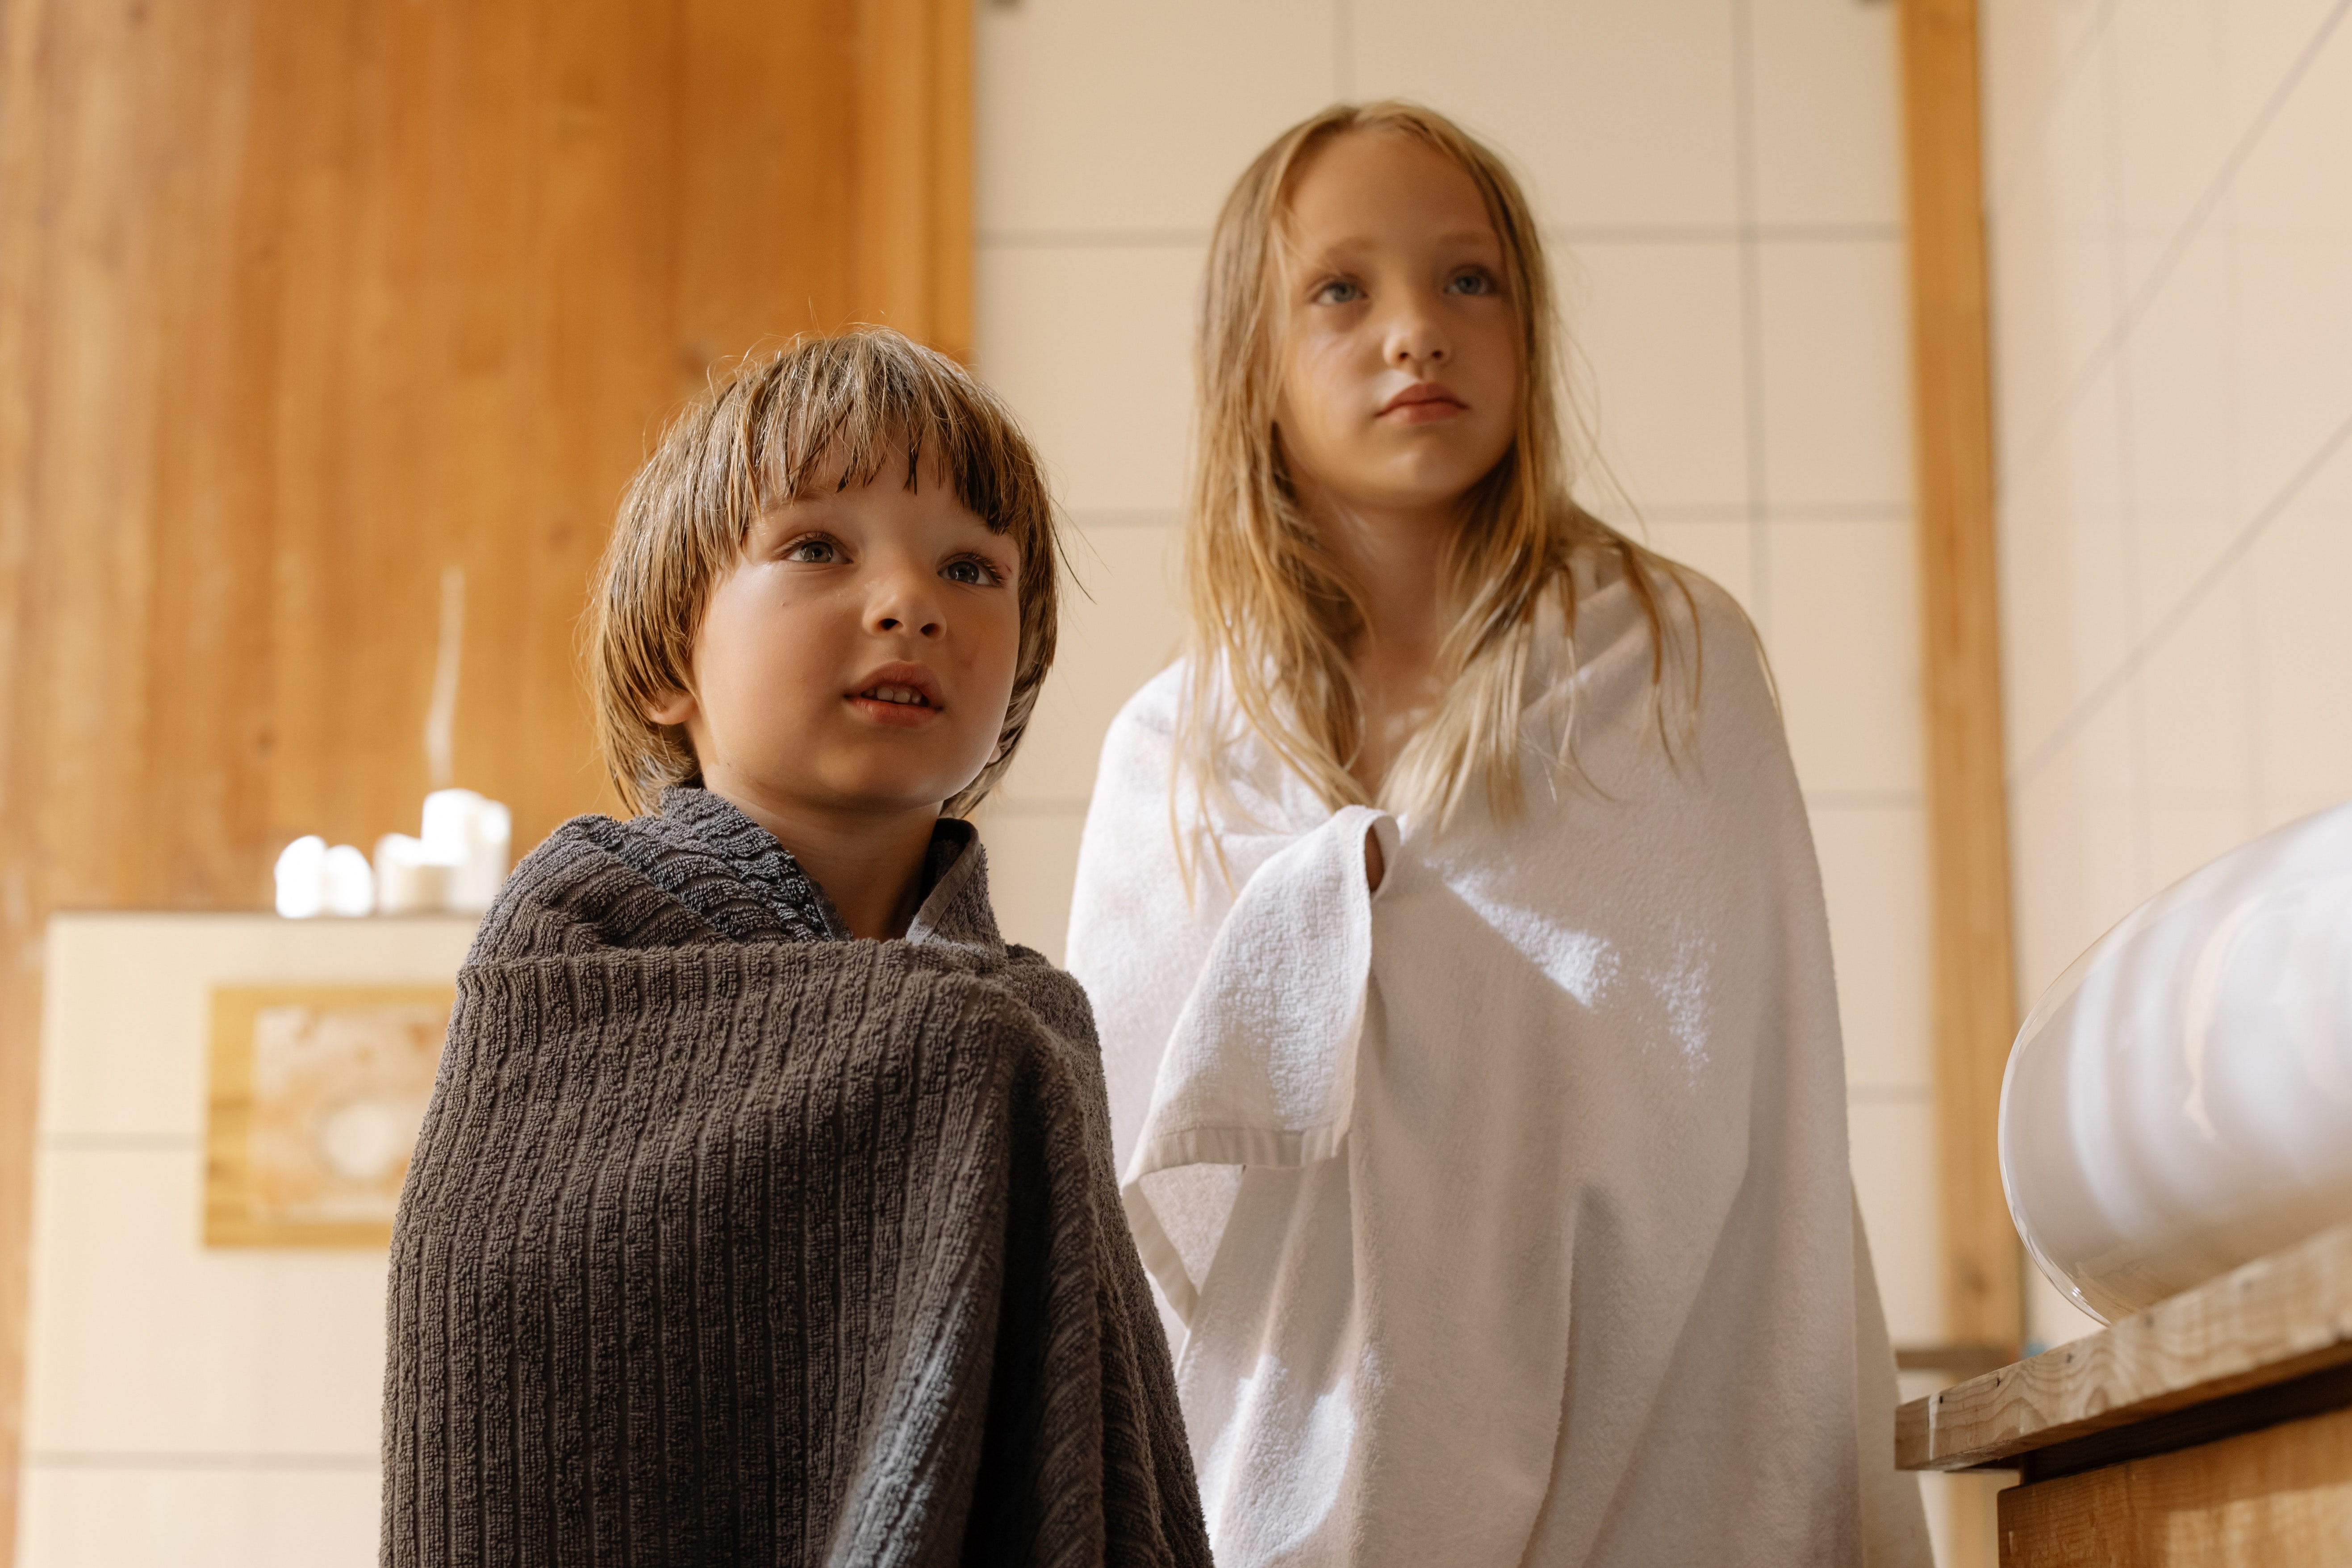 Junge und Mädchen stehen im Bad, eingehüllt in ein Handtuch.